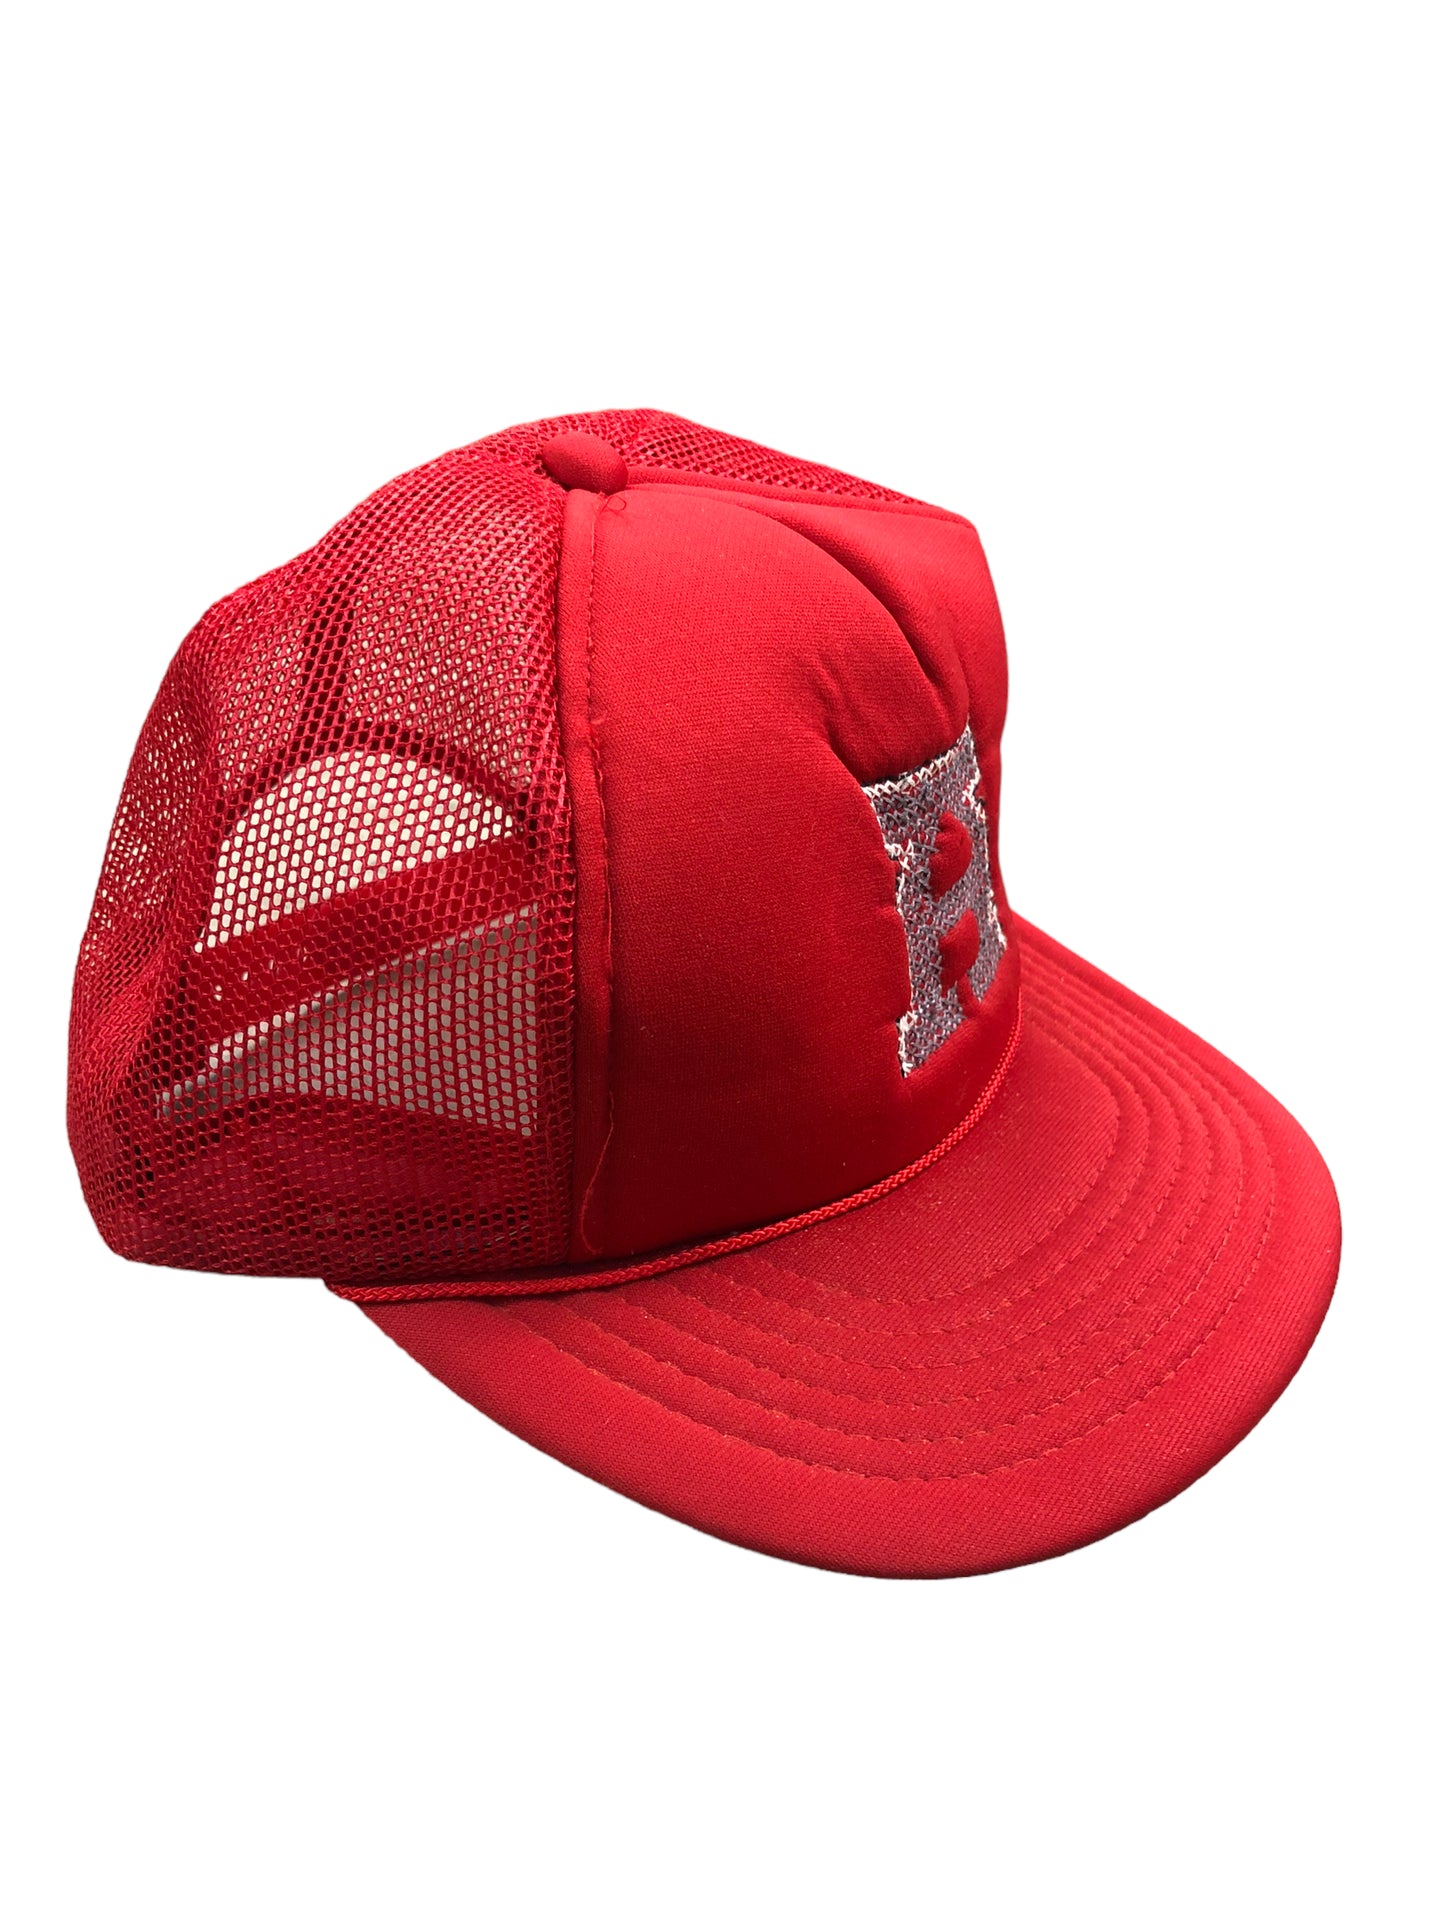 VTG Red Chain Stitch Alabama Trucker Hat